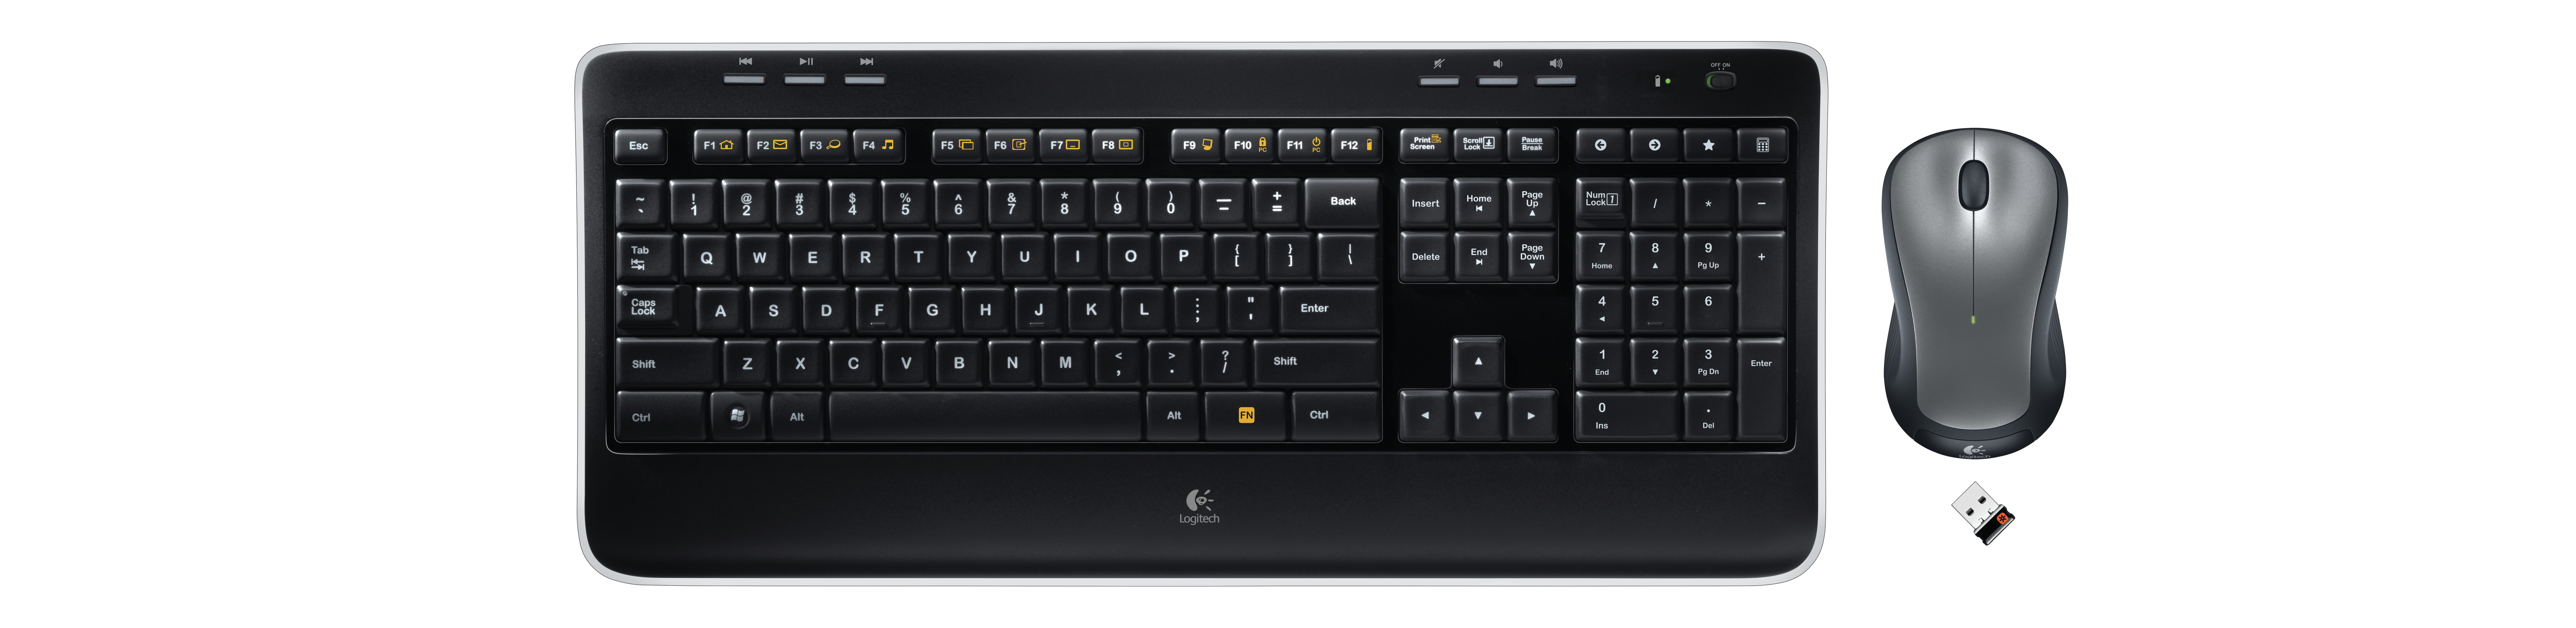 Bộ bàn phím chuột không dây Logitech MK520R Wireless  có thiết kế phím đầy đủ chức năng